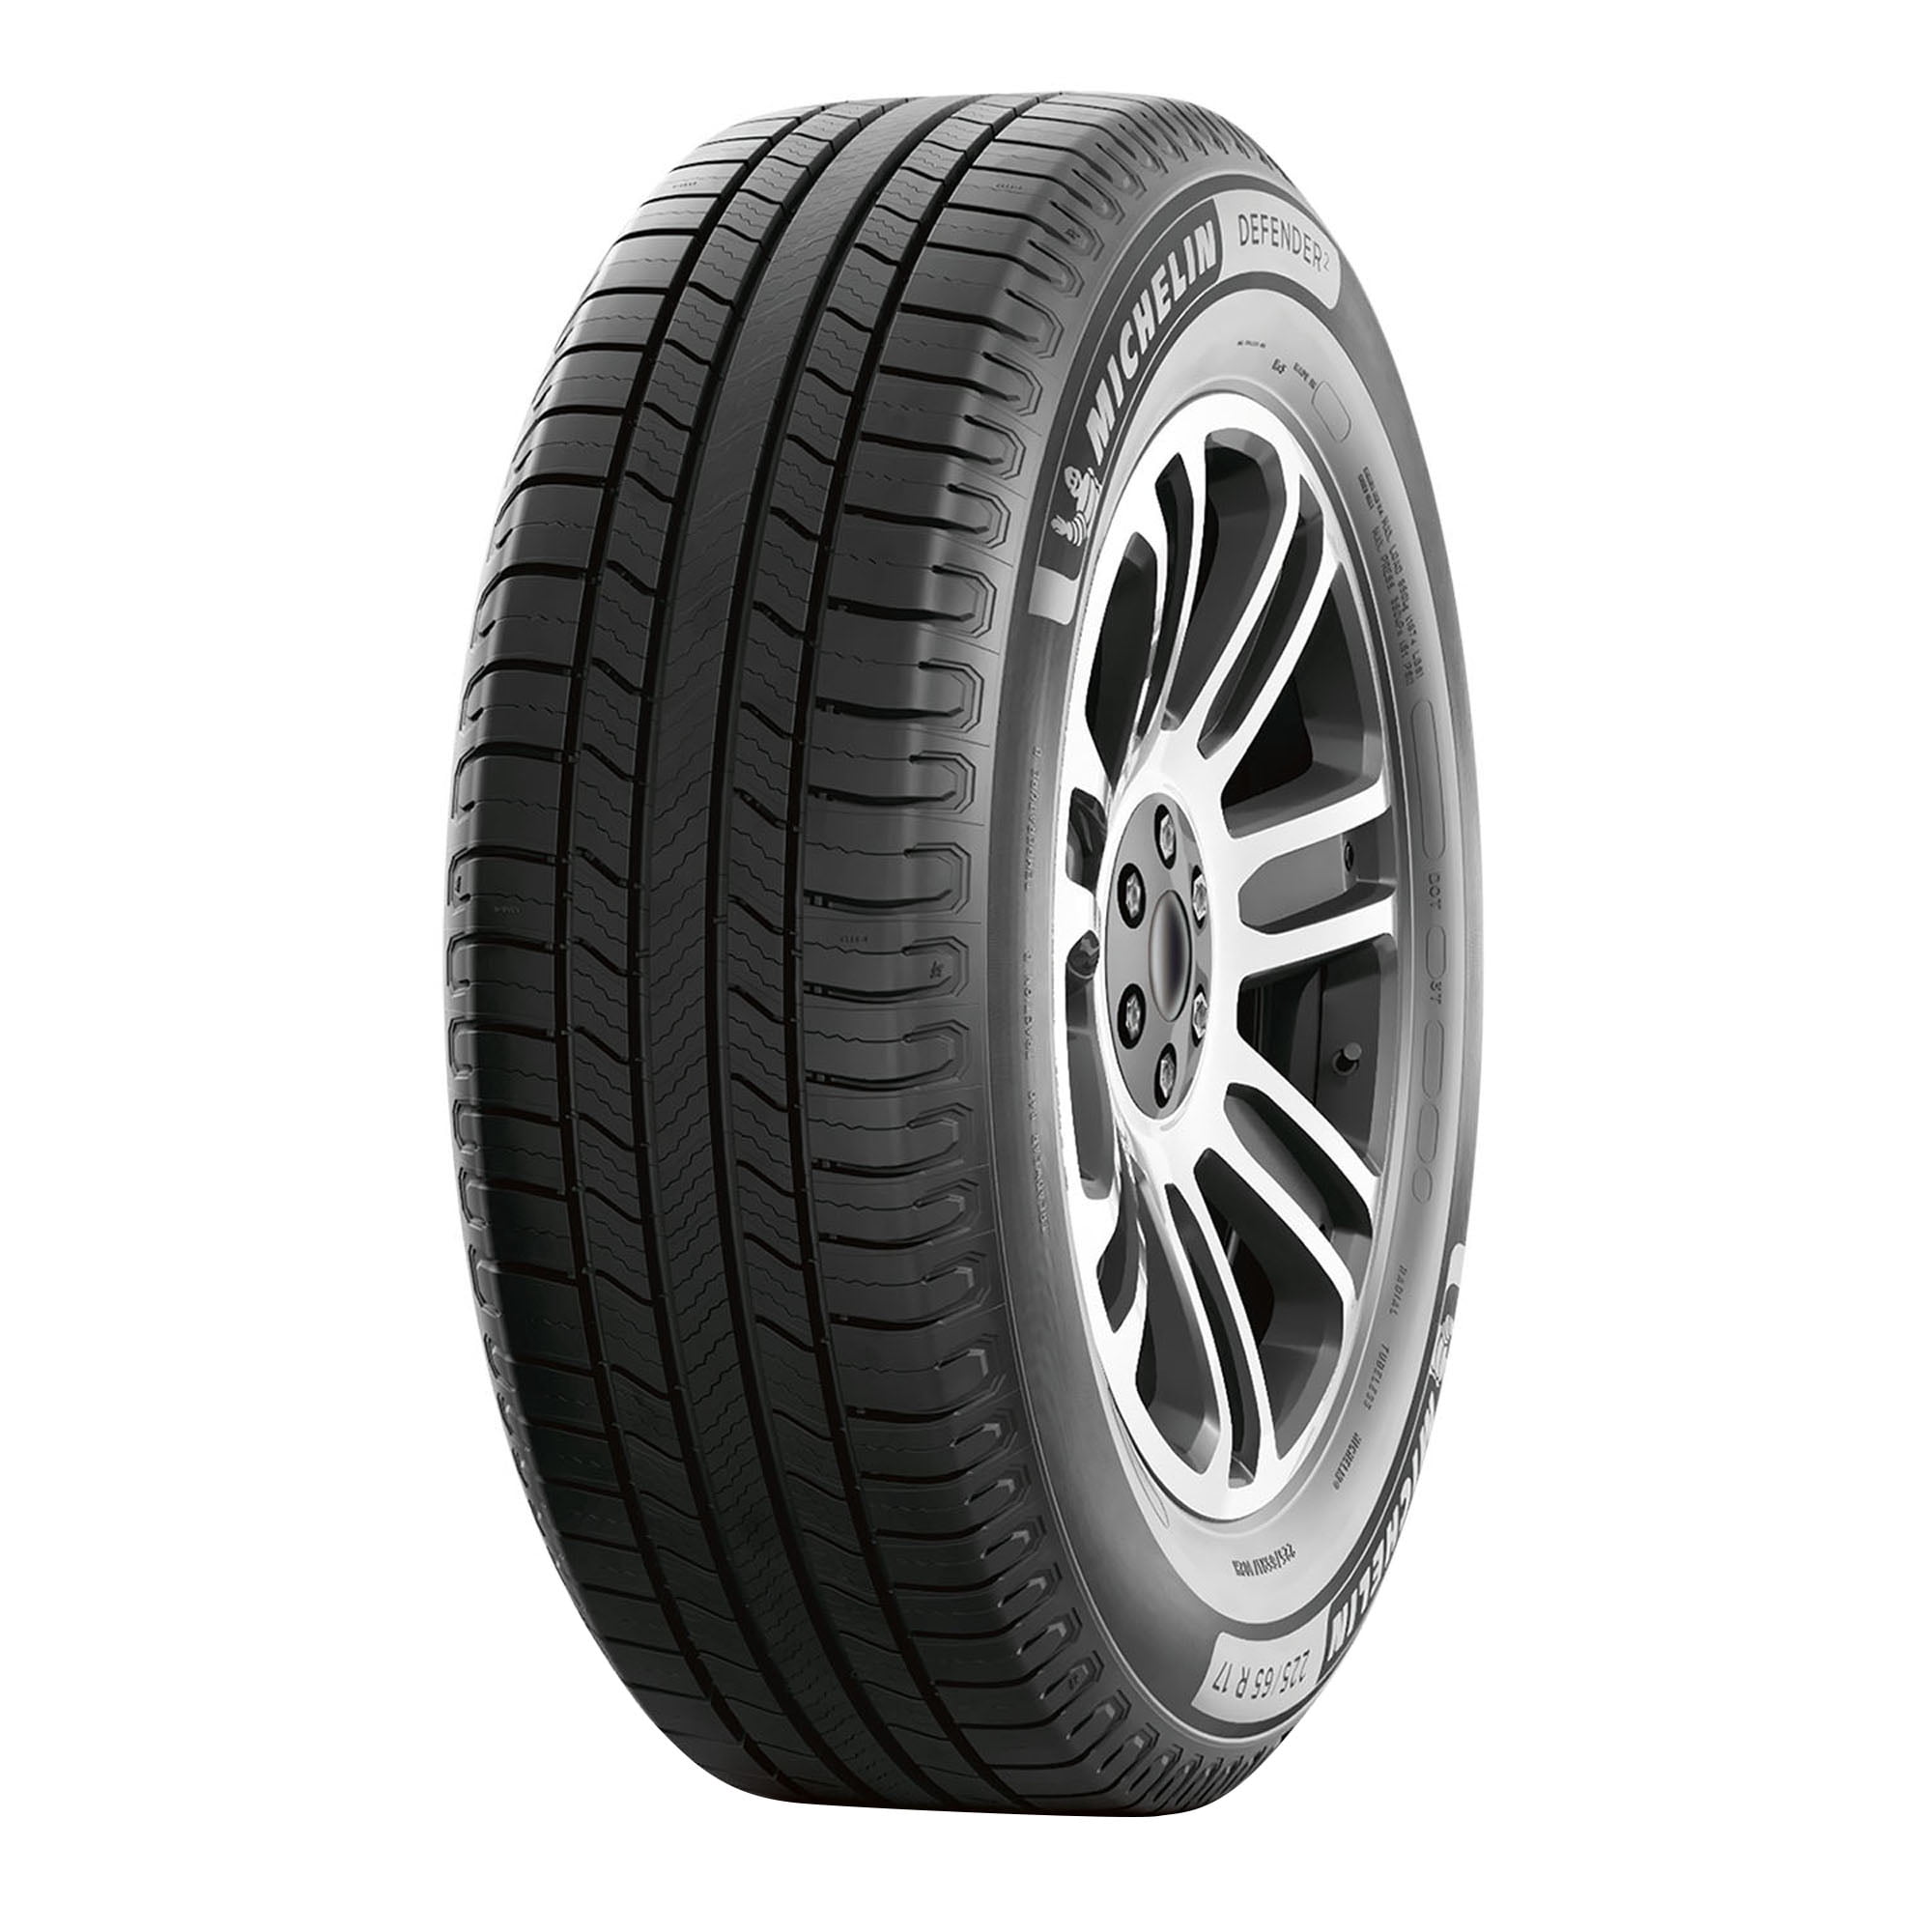 W210 Pirelli Passenger 235/50R19 XL Tire SottoZero 103H Serie II Winter